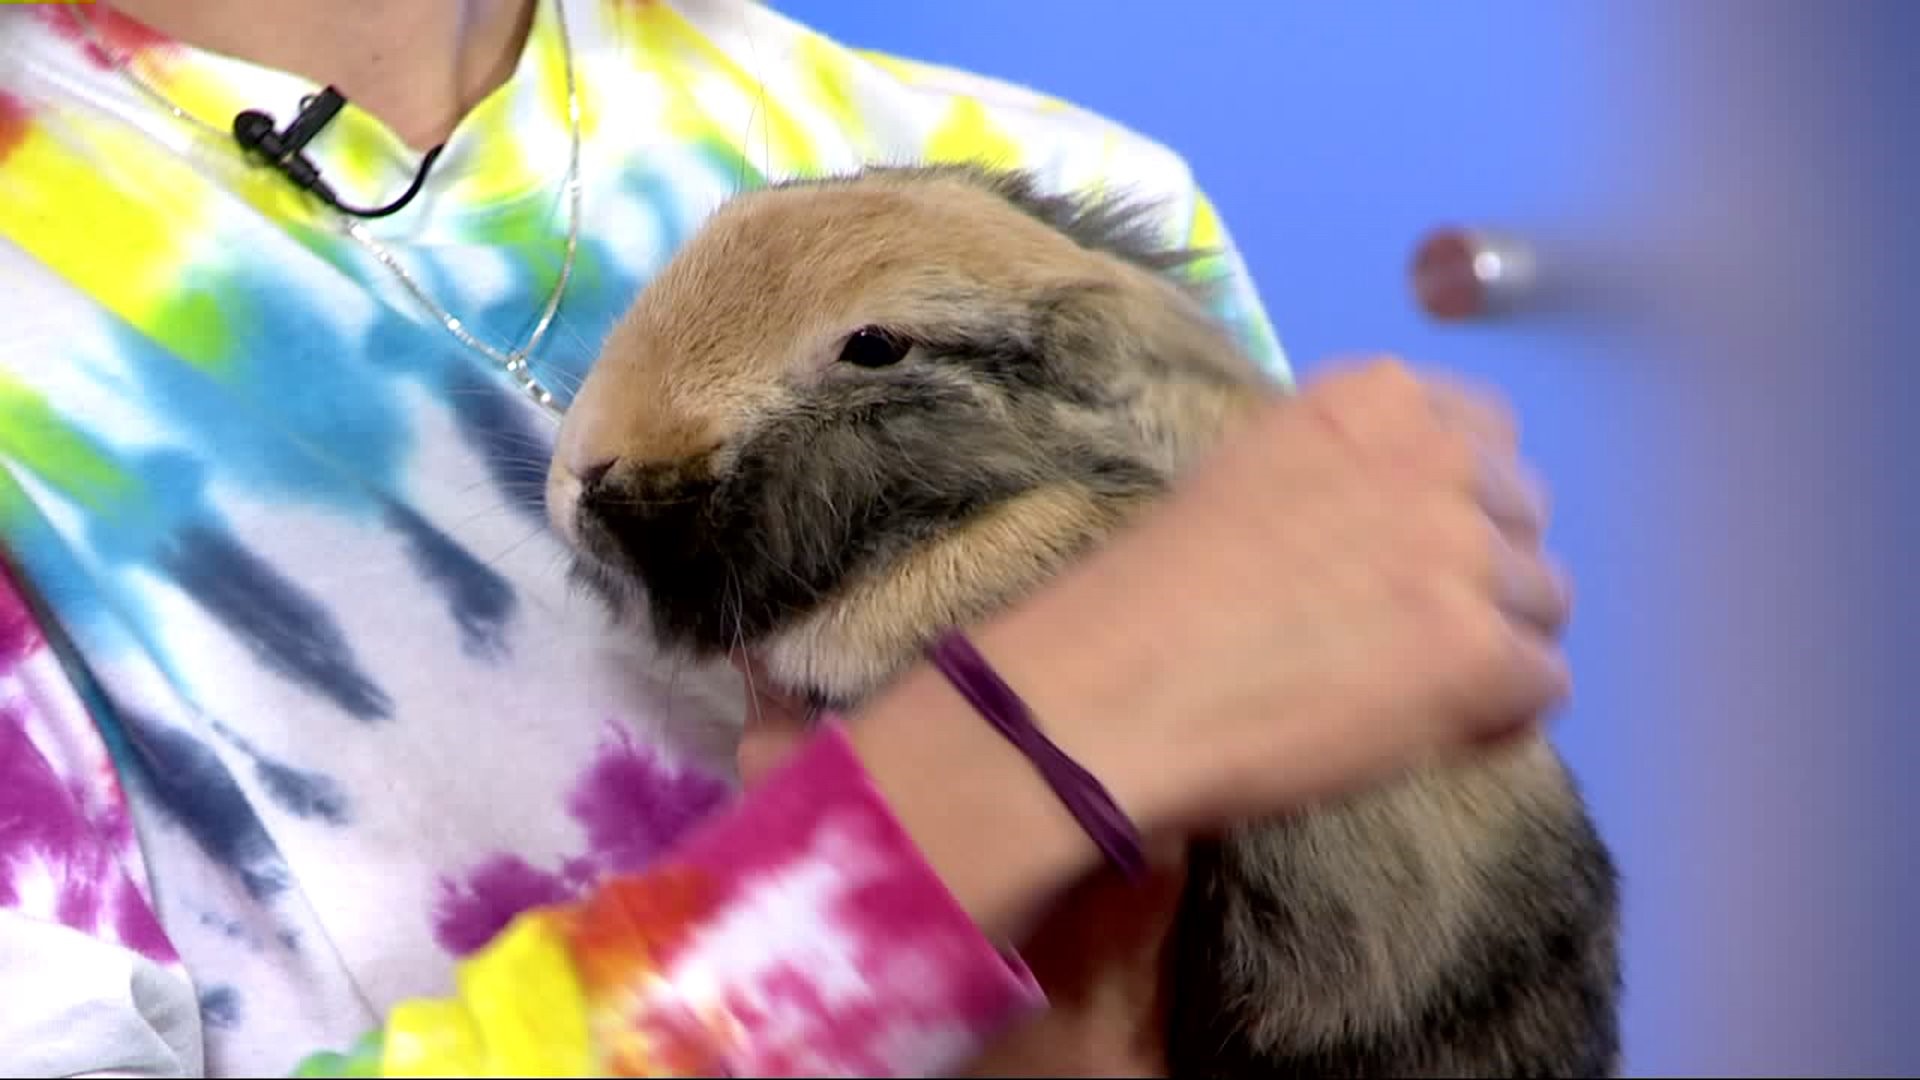 Furry Friends with Oscar, the bunny